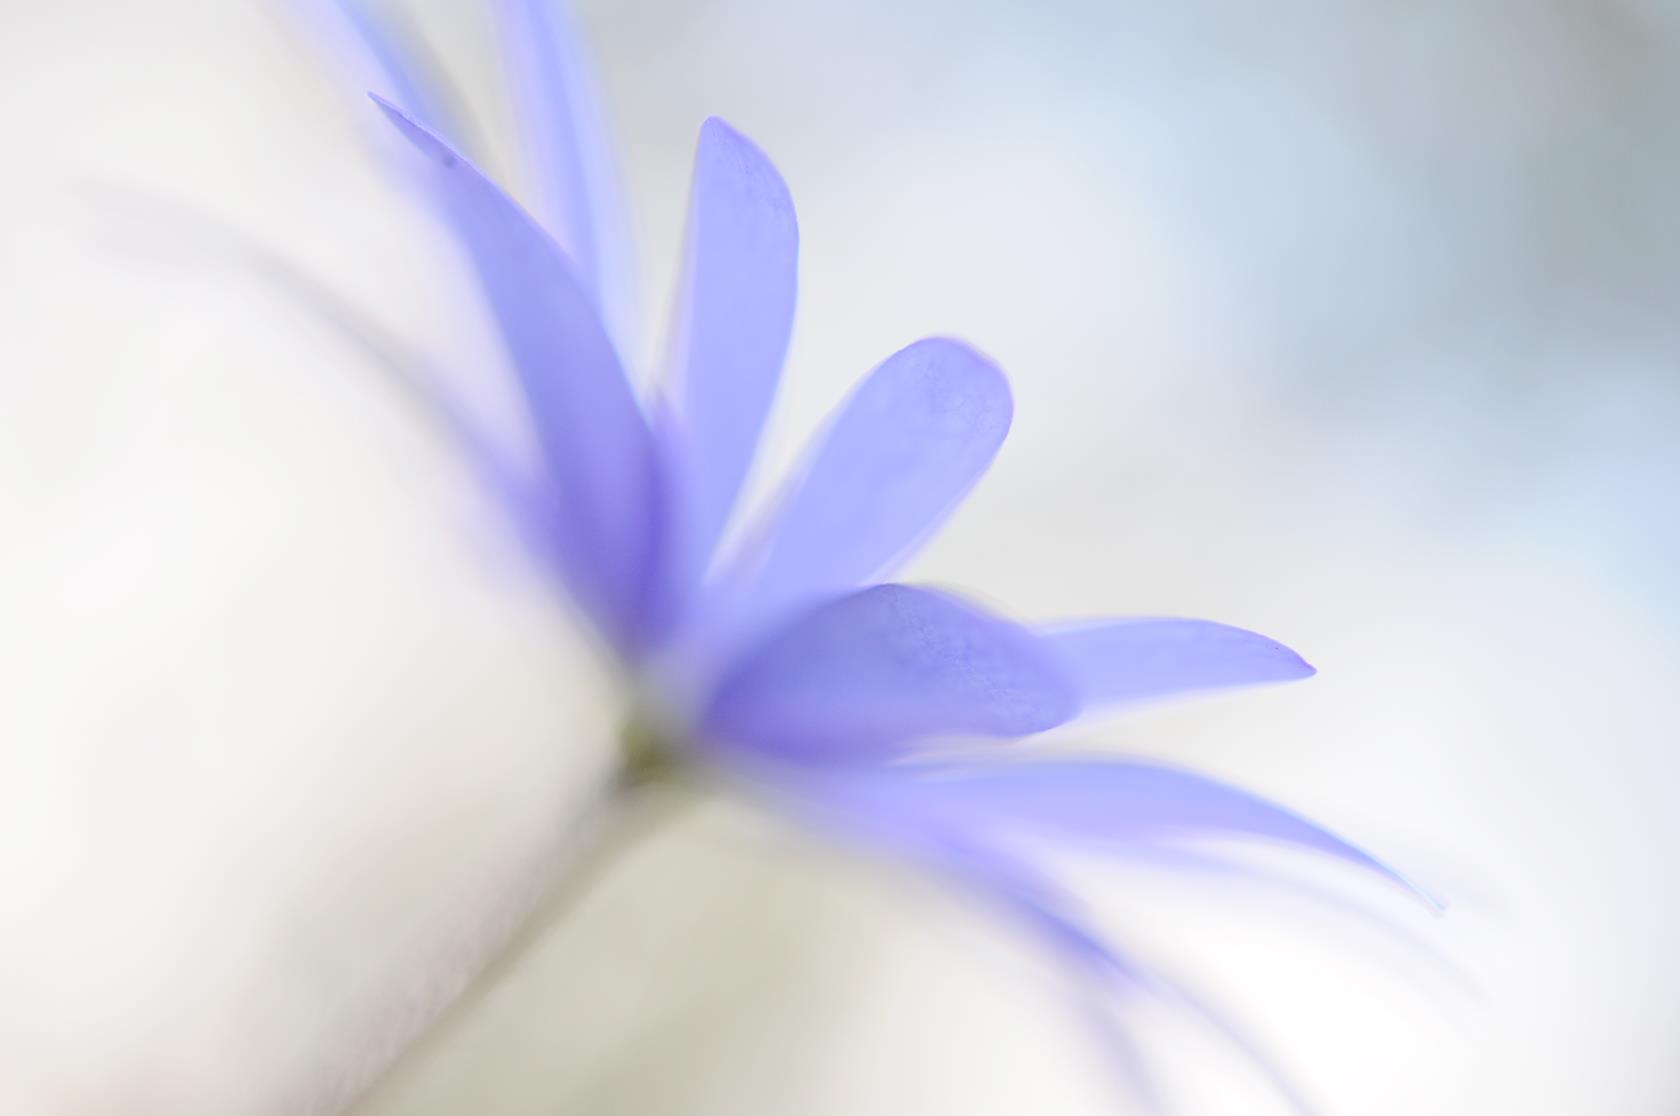 En suddig närbild på en blålila blomma.